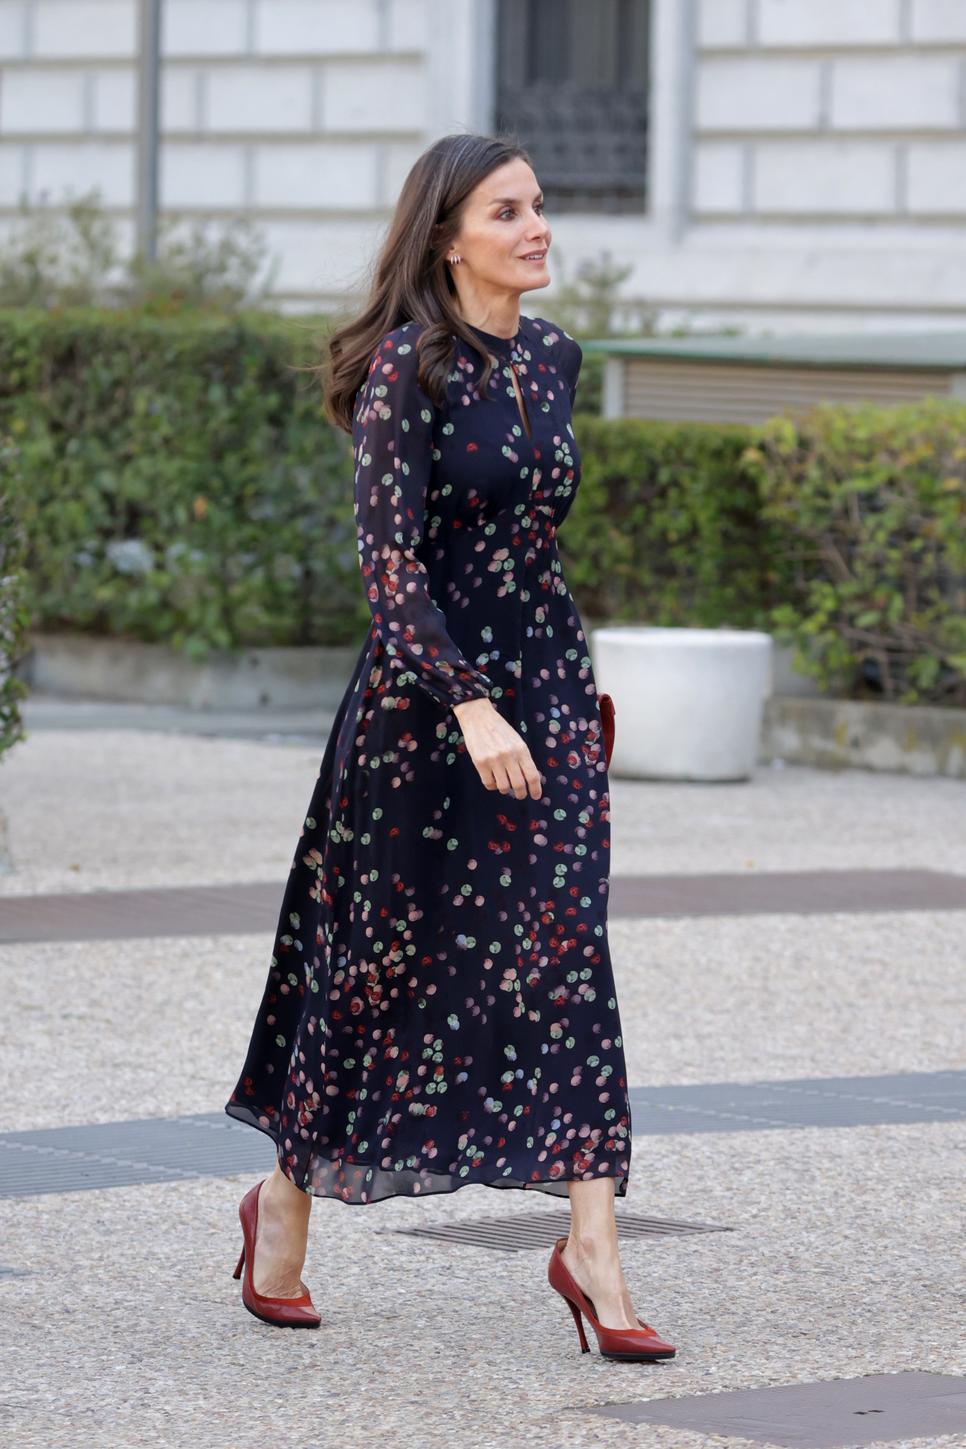 La Reina ha lucido tantas veces este vestido de Massimo Tutti que fue todo un acierto con sólo un cambio de complementos.